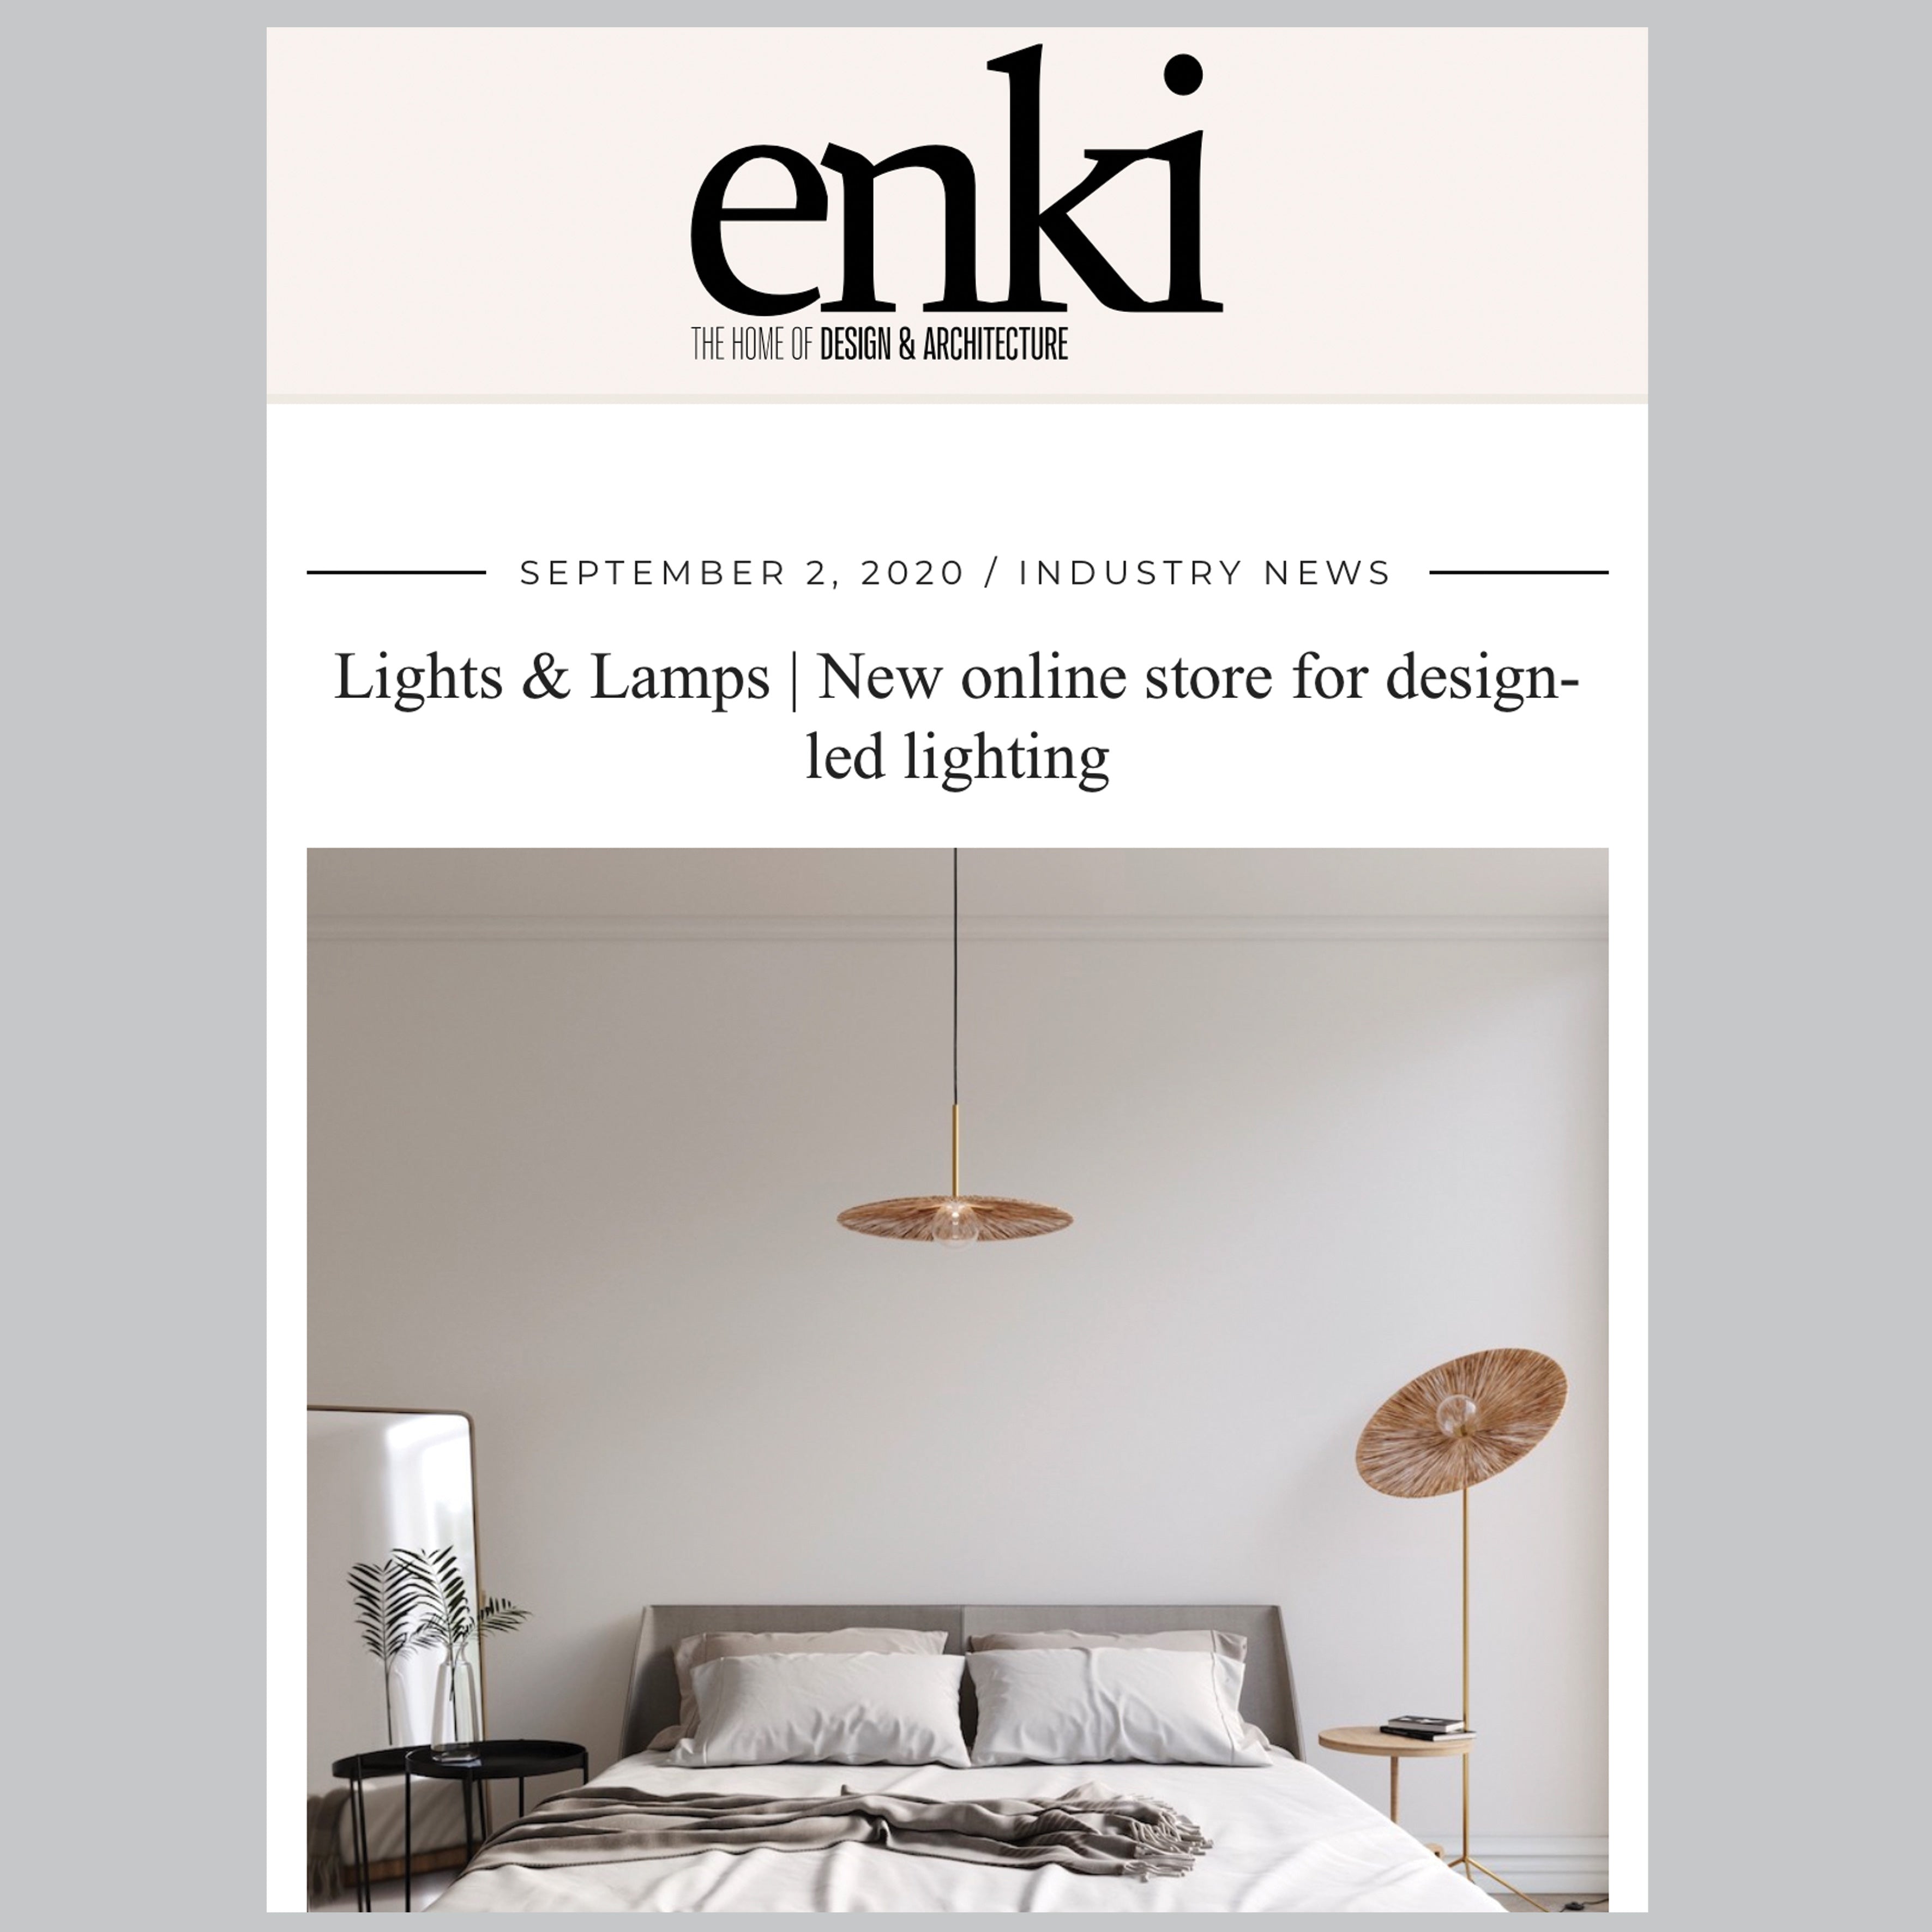 Design led lighting - enki